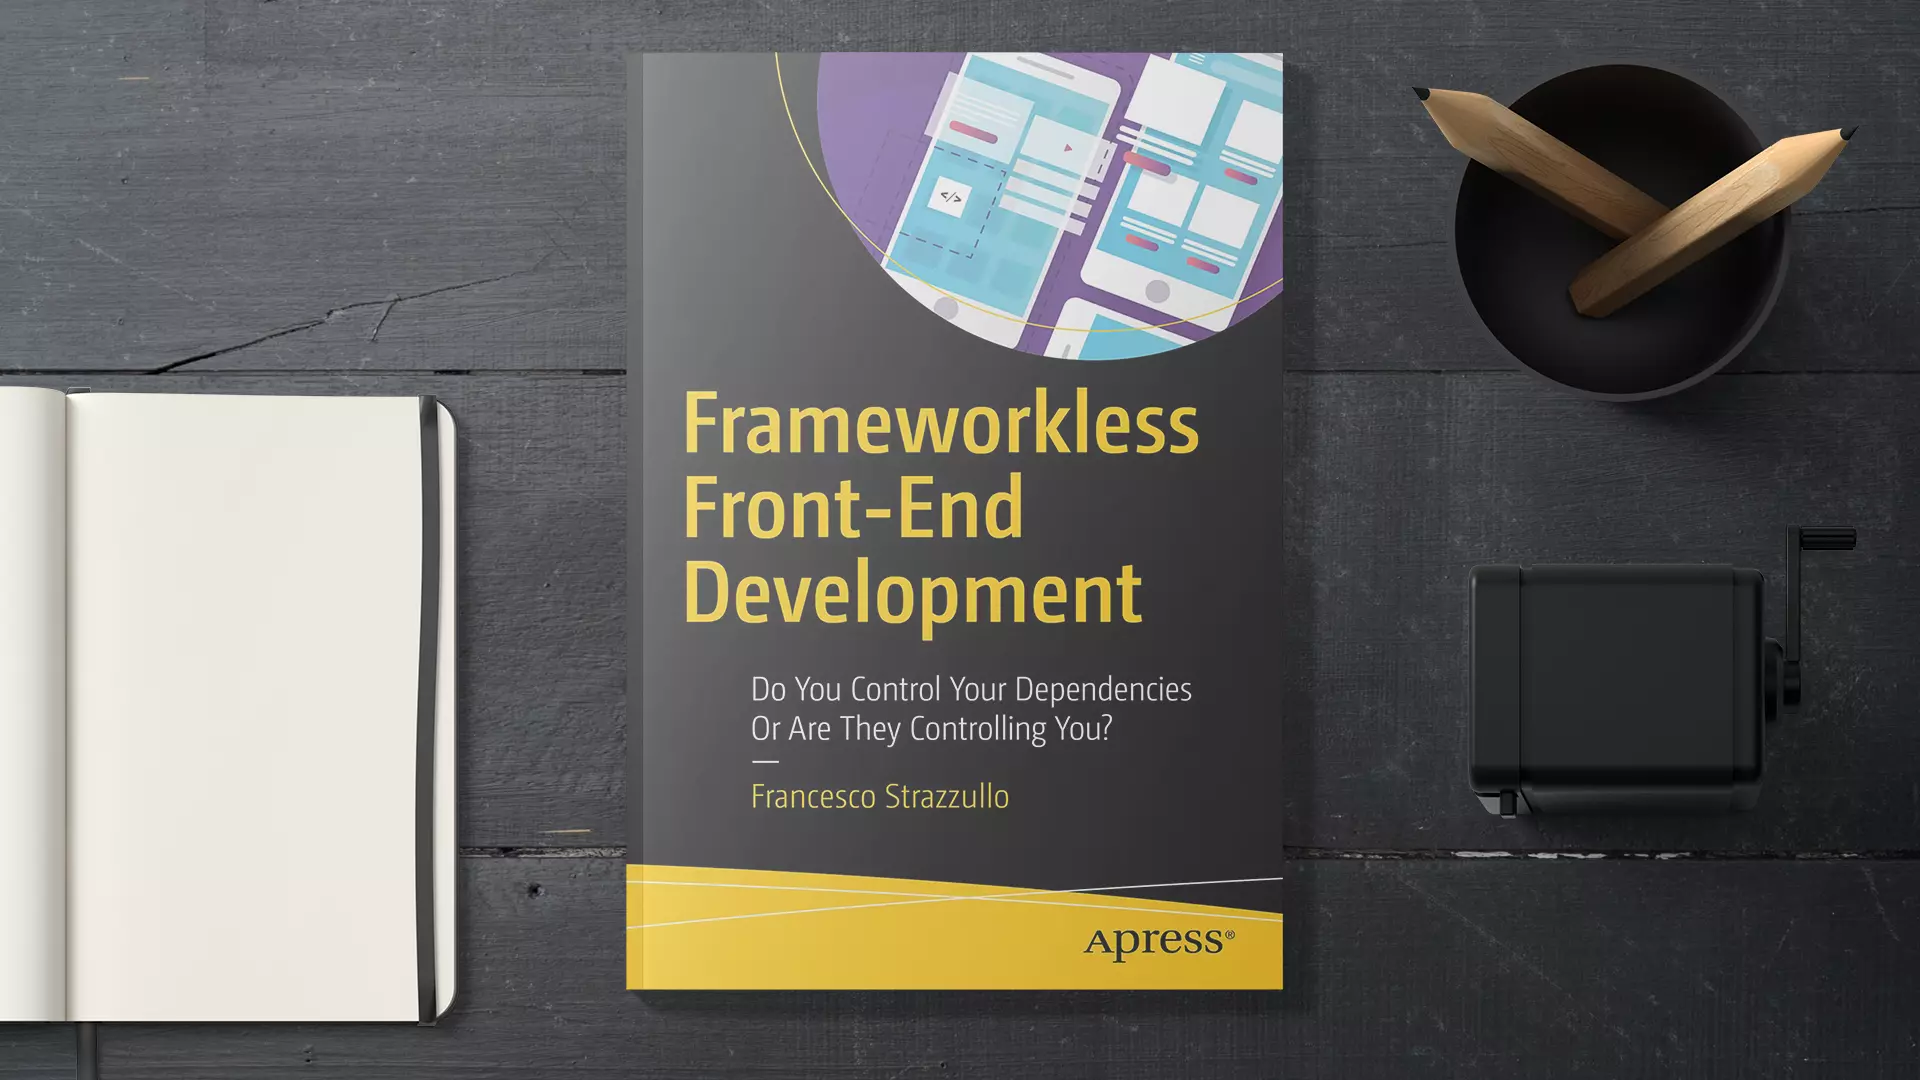 دانلود کتاب Frameworkless Front-End Development